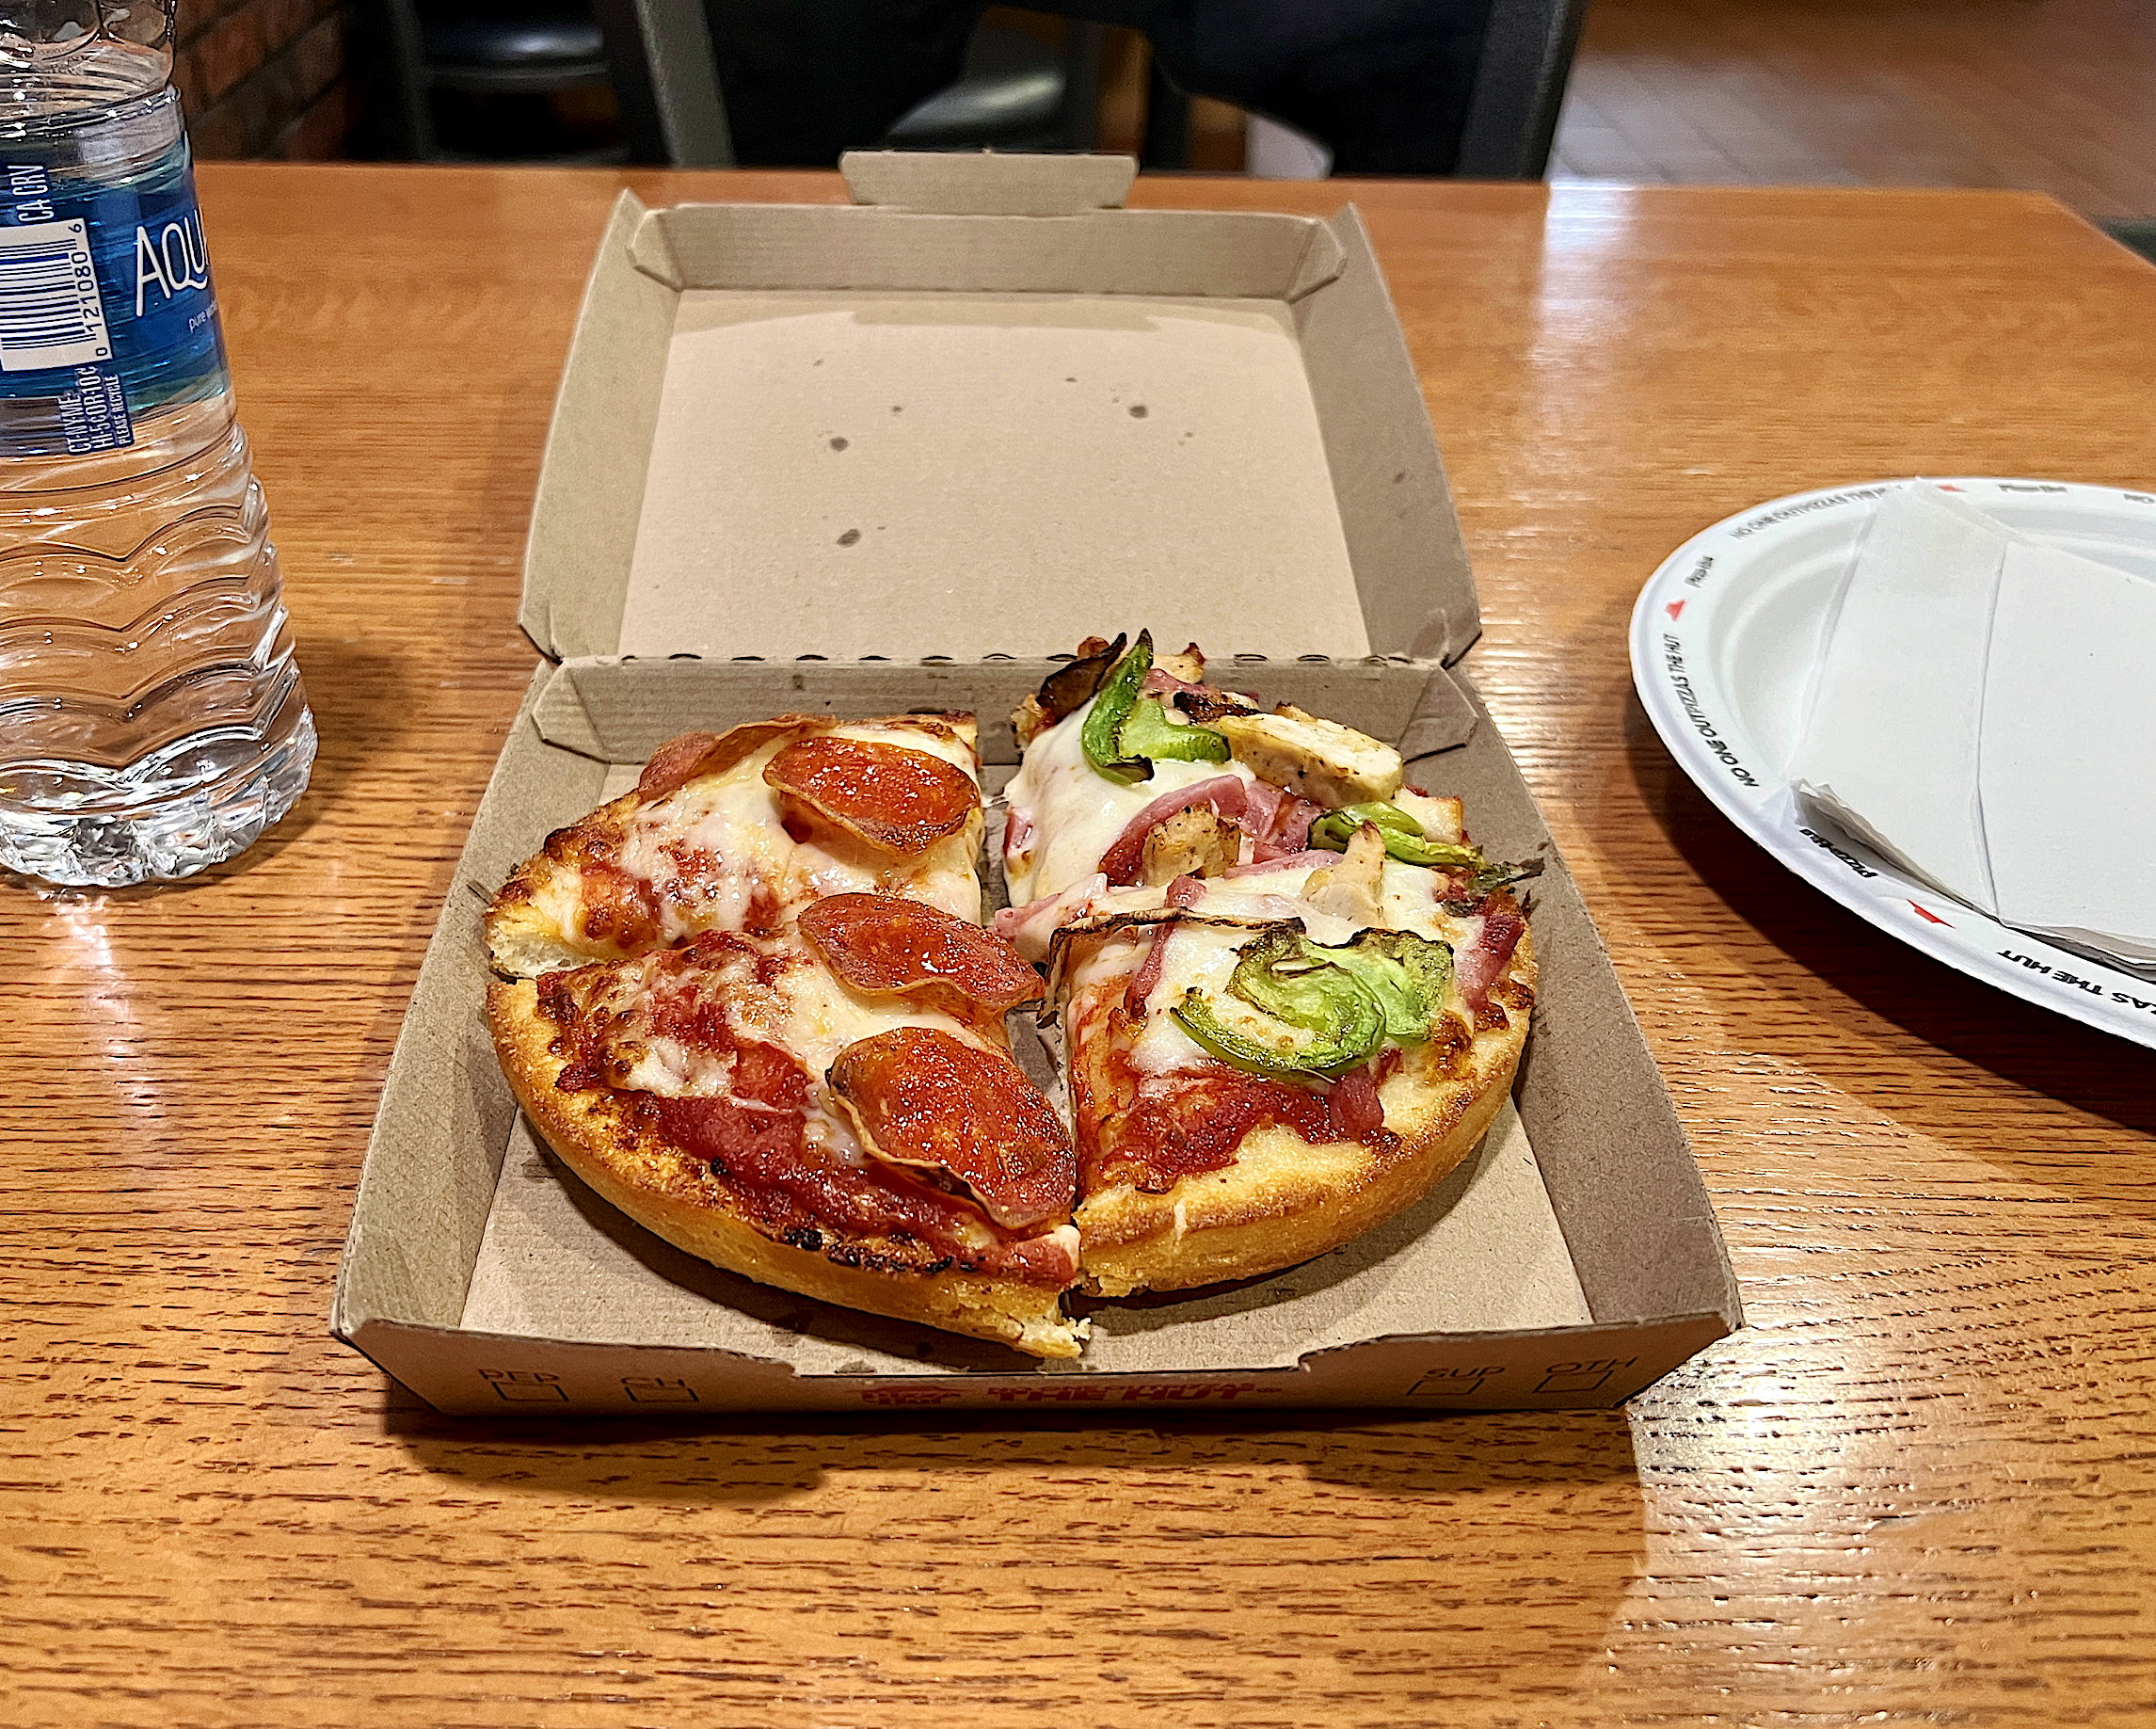 Eine kleine, rund 20cm durchmessende, dicke Pizza in der geöffneten Kartonschachtel. Auf einer Seite mit pikanter Salami, auf der anderen Seite mit Gemüse und Schinken. Hätte Hawai'i sein sollen. Daneben steht eine Flasche Wasser.